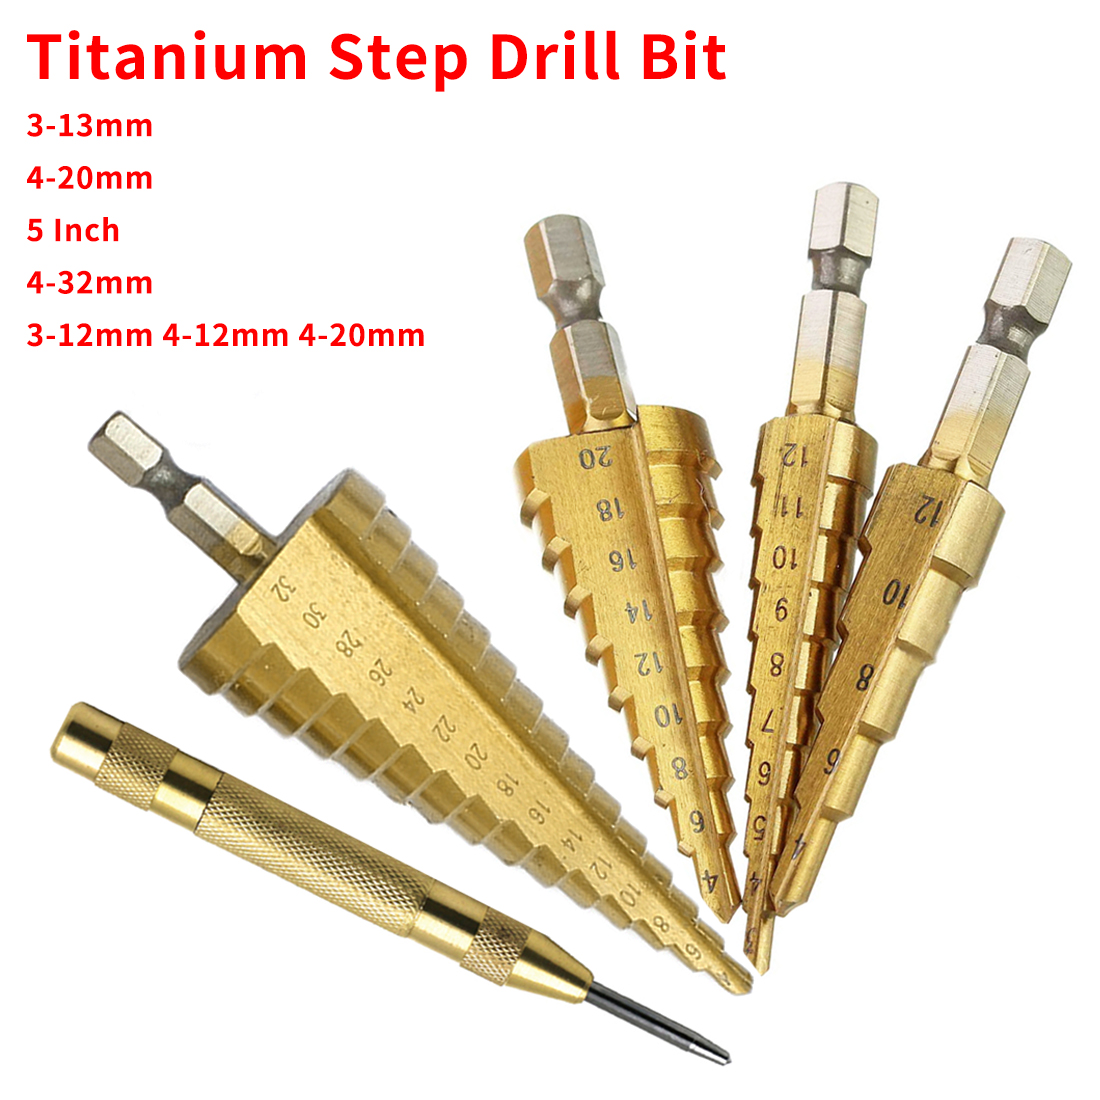 3-12mm 4-12mm 4-20mm Step Drill Bit HSS Titanium Steel Woodworking Metal Drilling Set Hex Shank Step Cone Cutting Tools